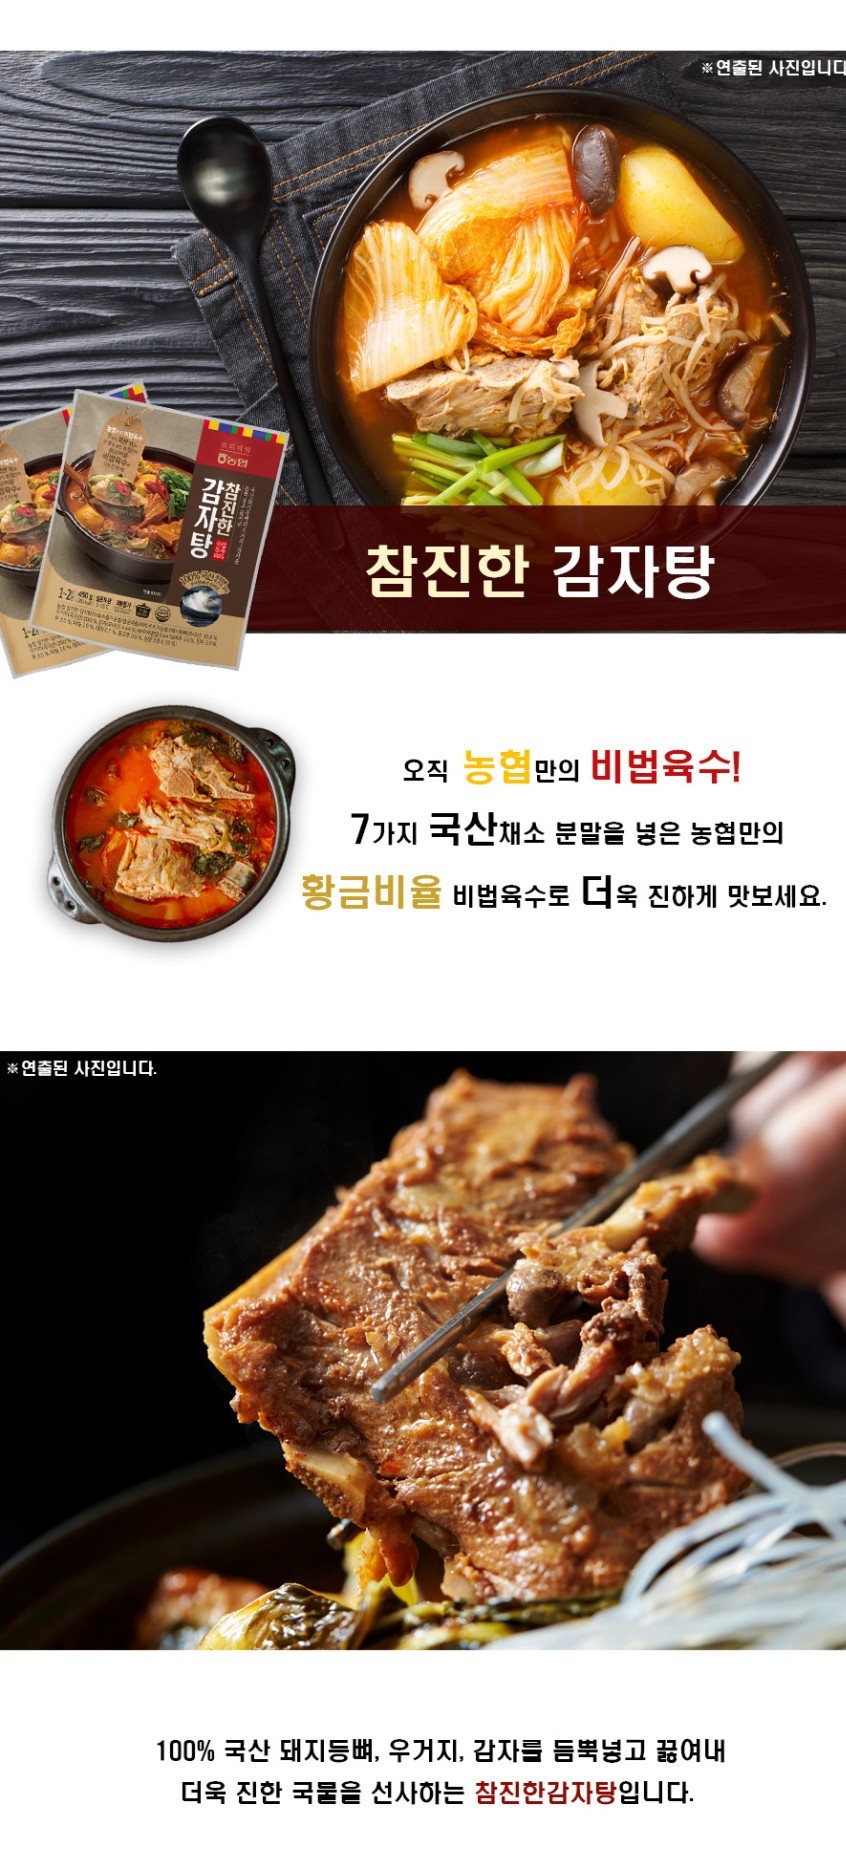 韓國食品-[농협] 감자탕 450g